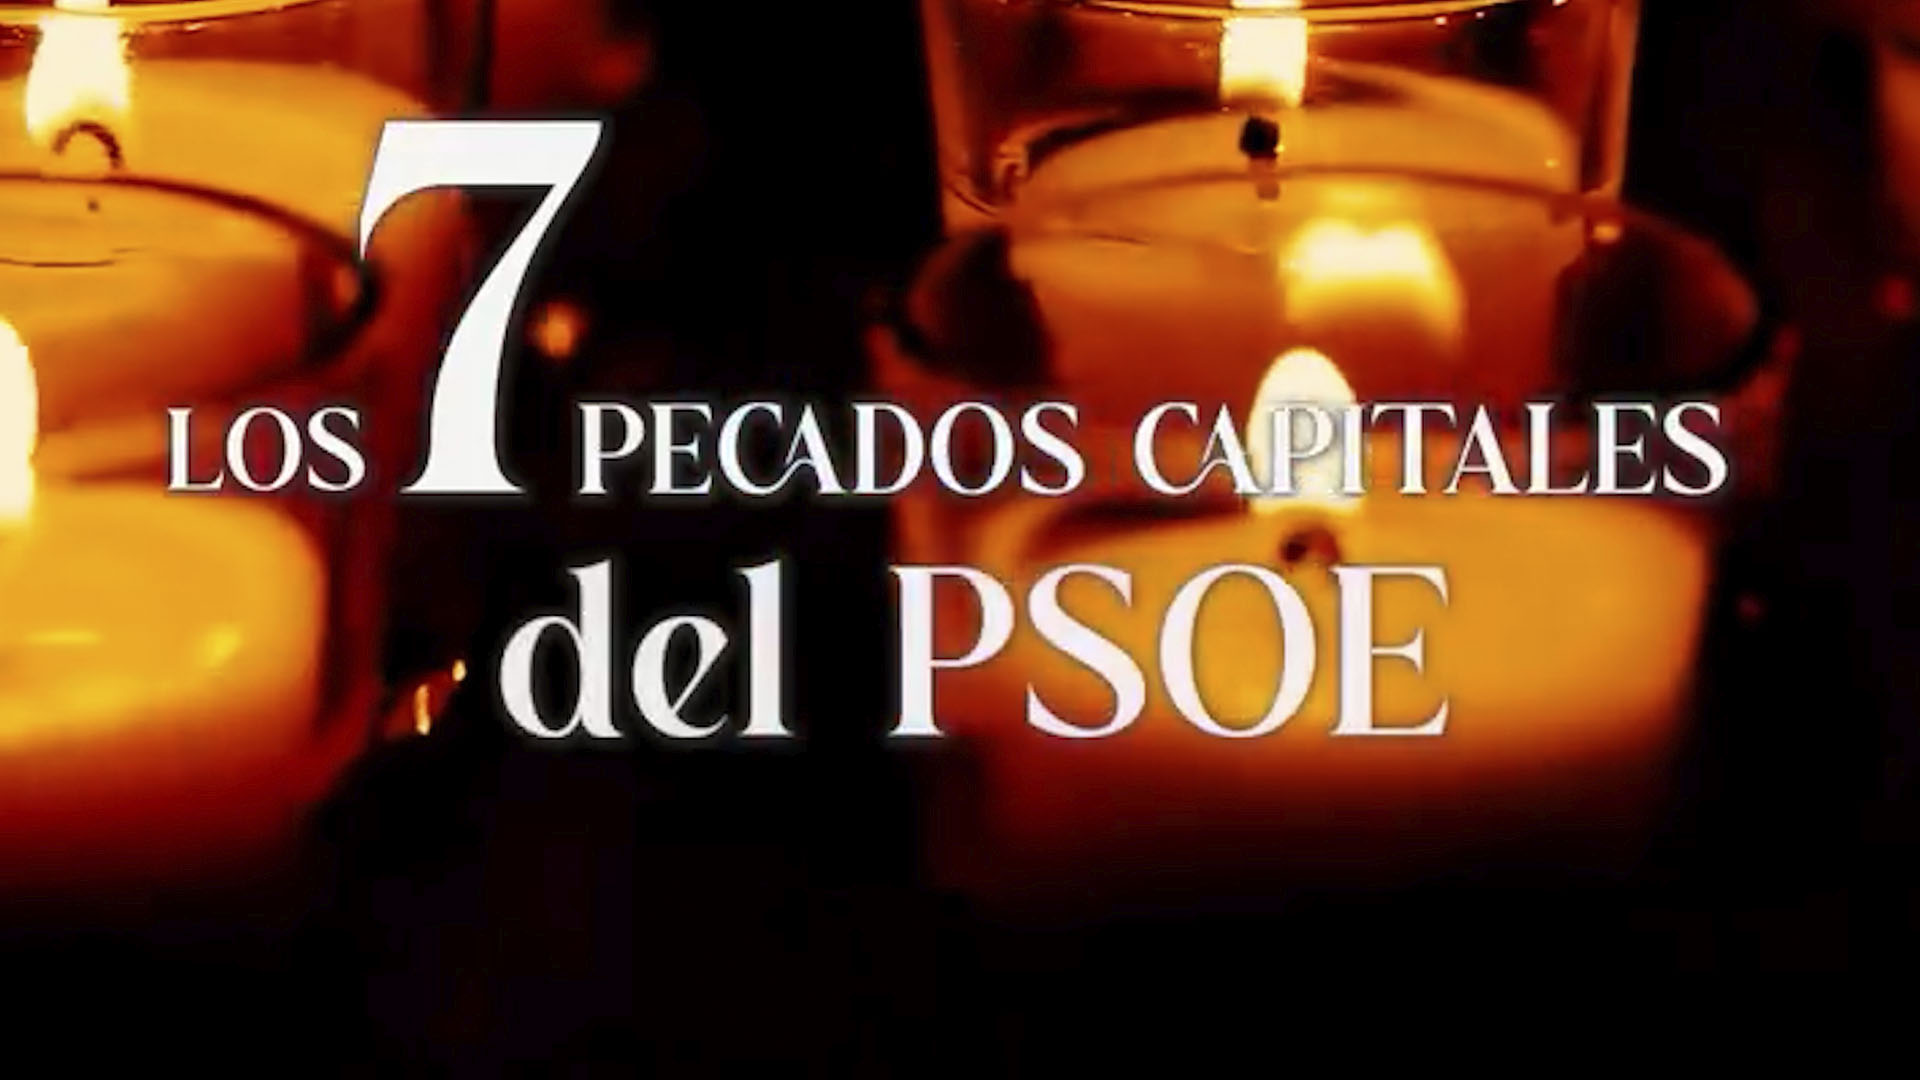 "Los siete pecados capitales del PSOE": el nuevo vídeo del PP de Madrid que se ha viralizado en redes